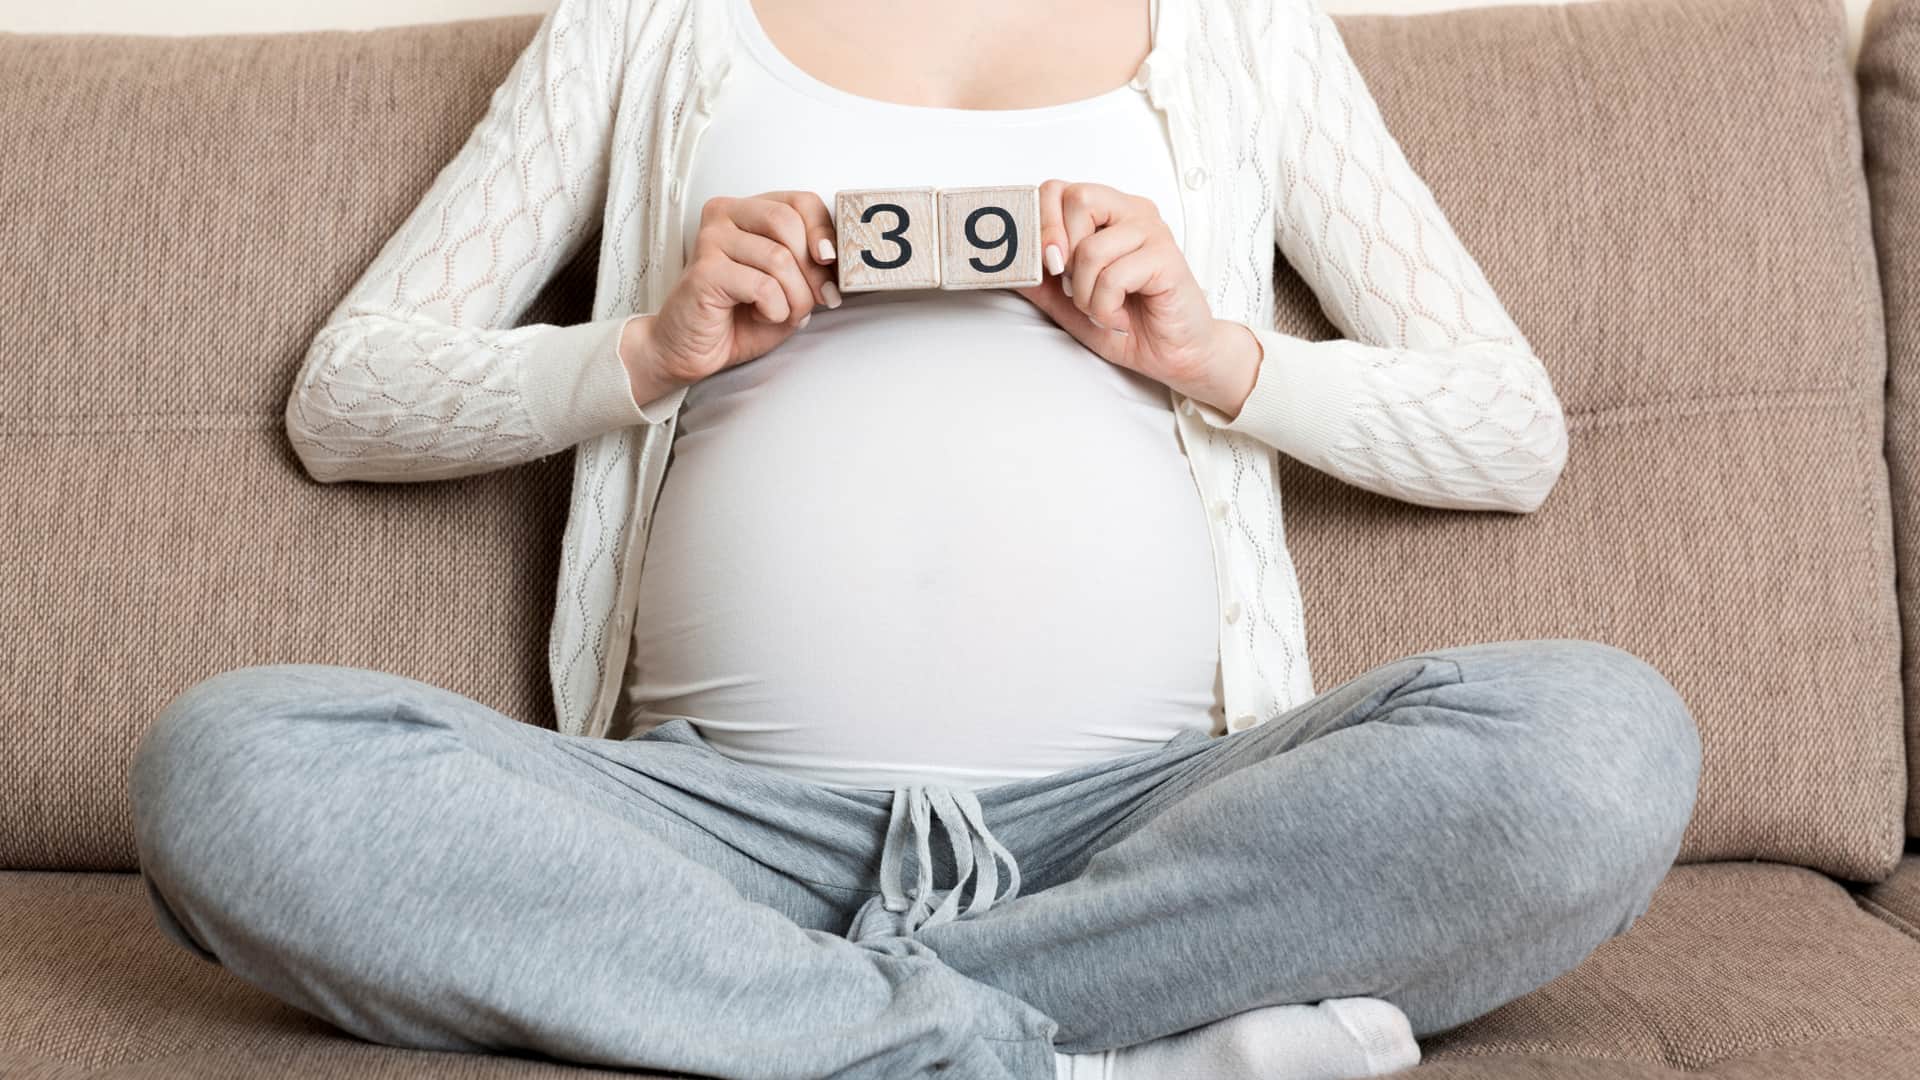 Mujer tumbada sobre la cama con unos dados de madera que indican que está en la semana 39 de embarazo